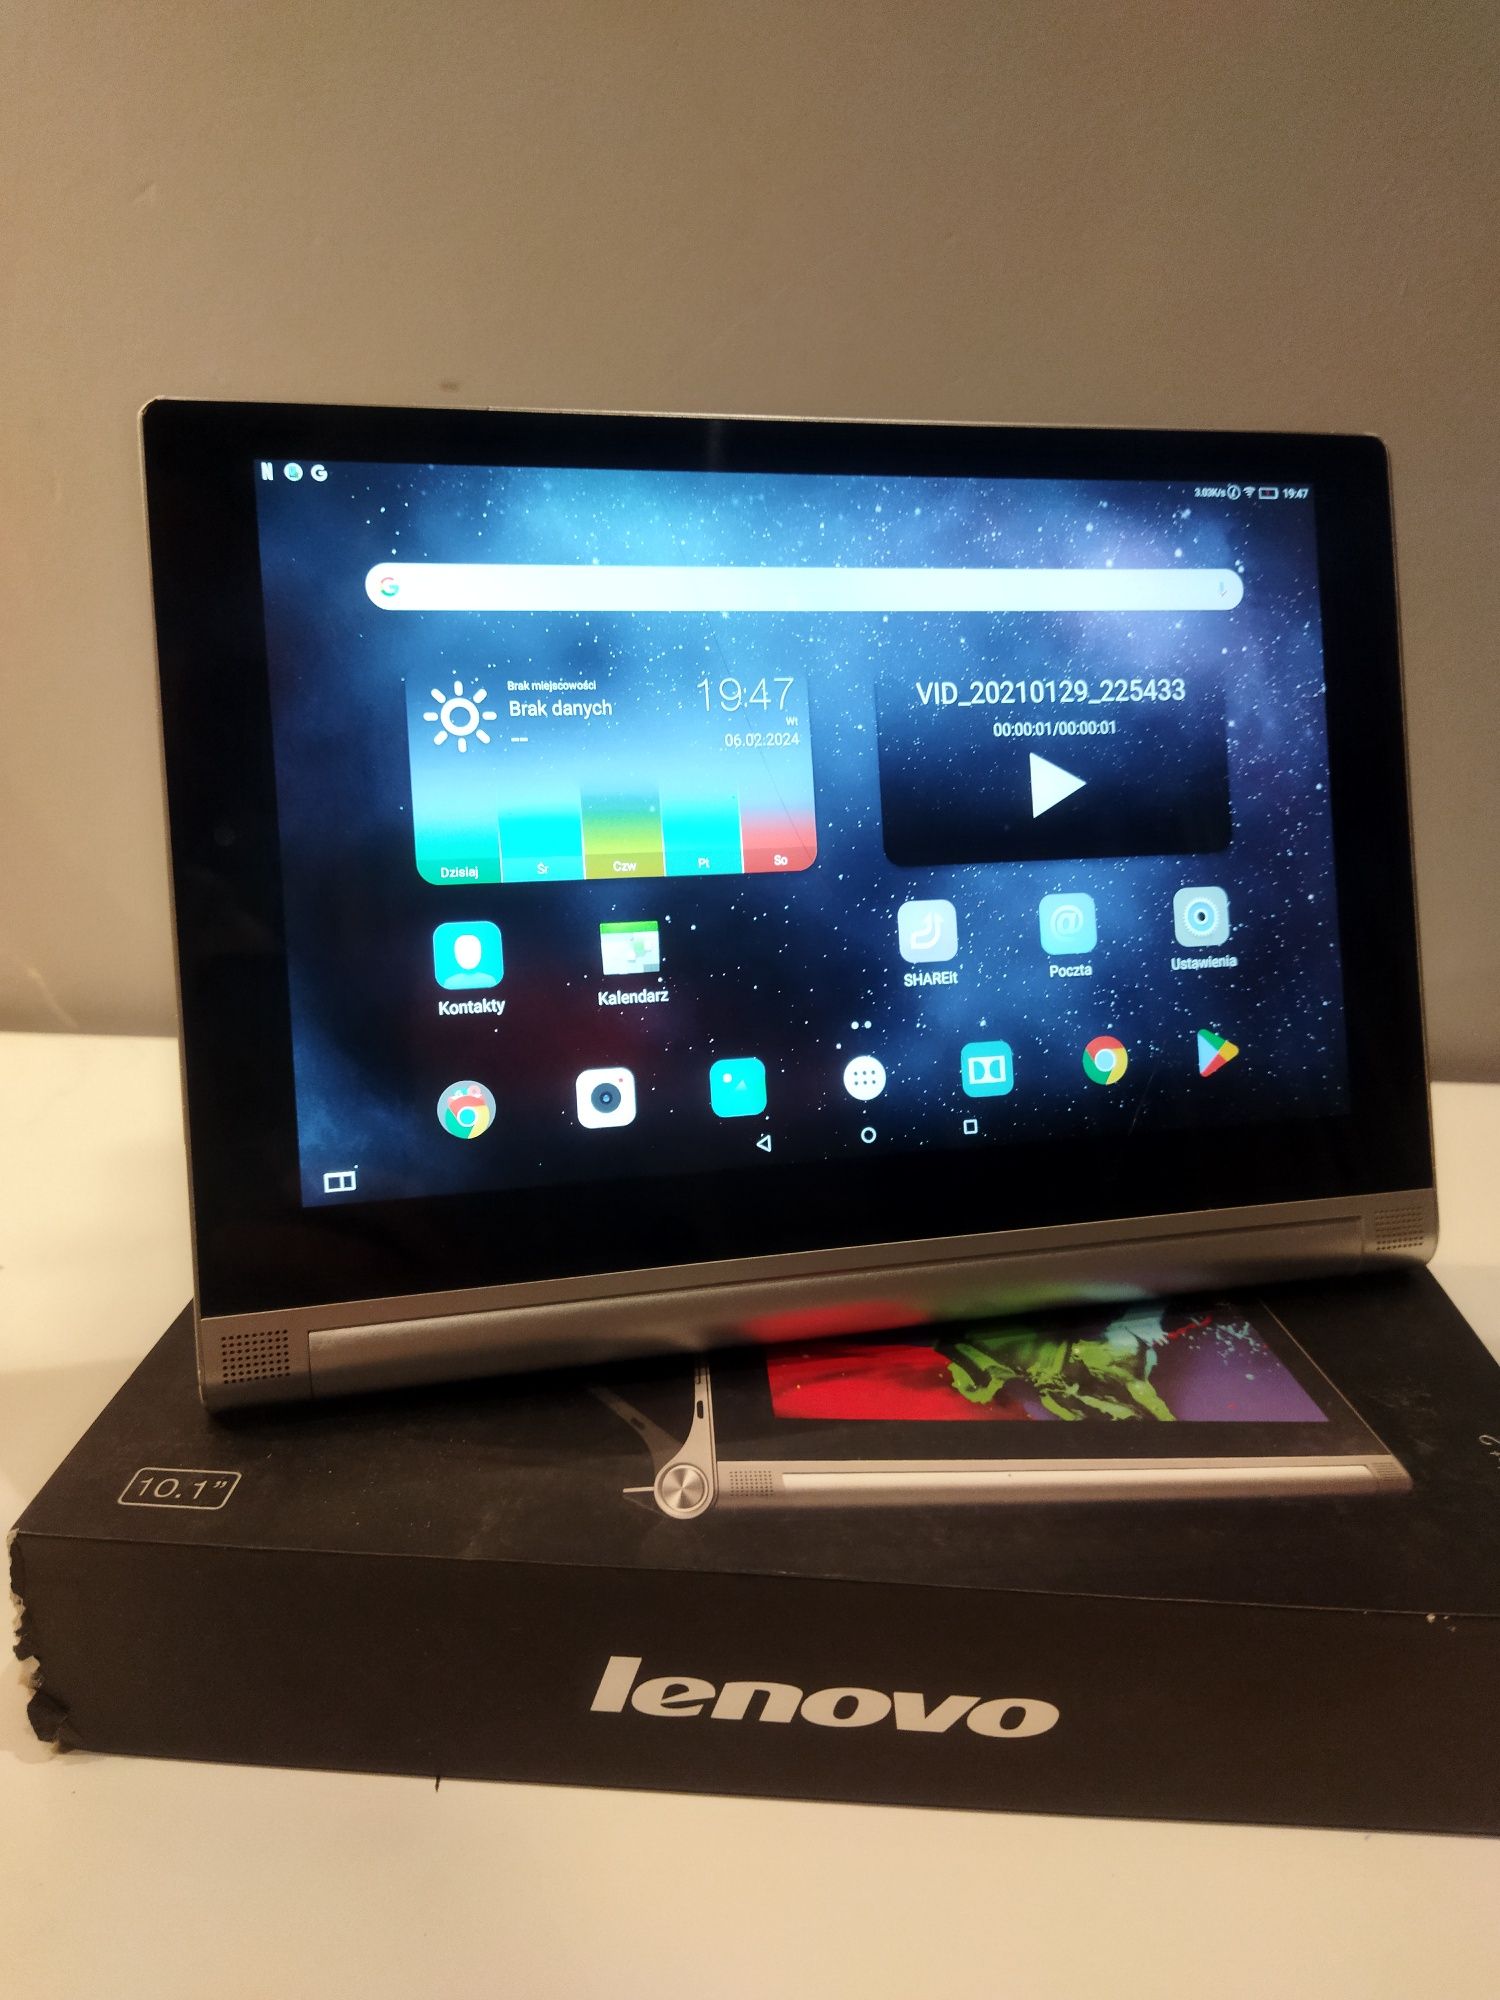 Lenovo YOGA tablet 2